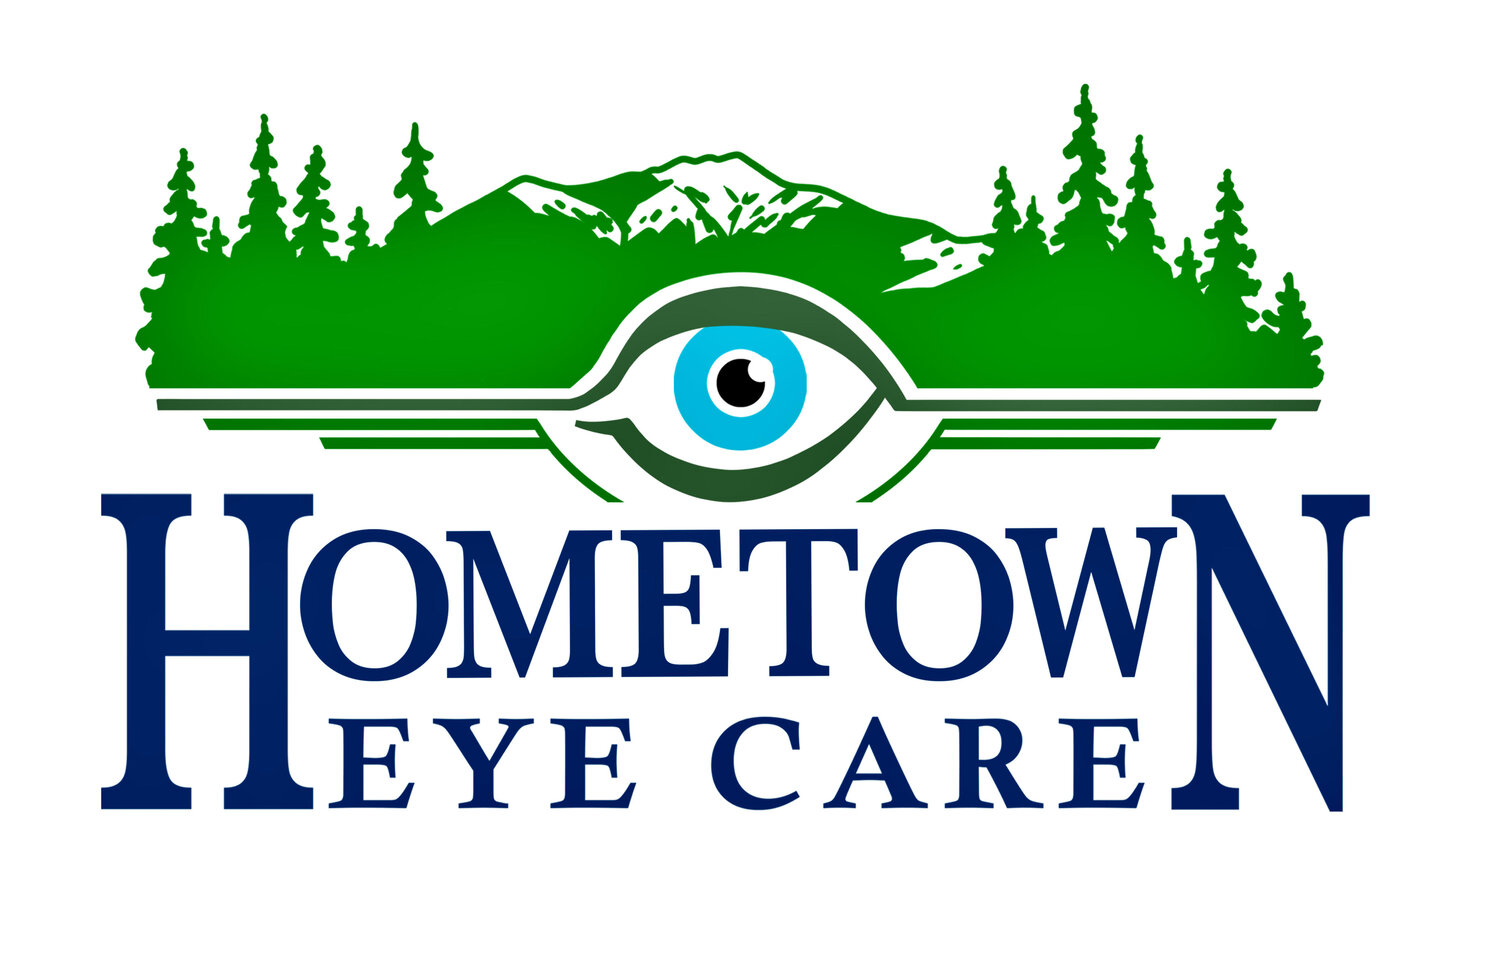 Hometown Eyes